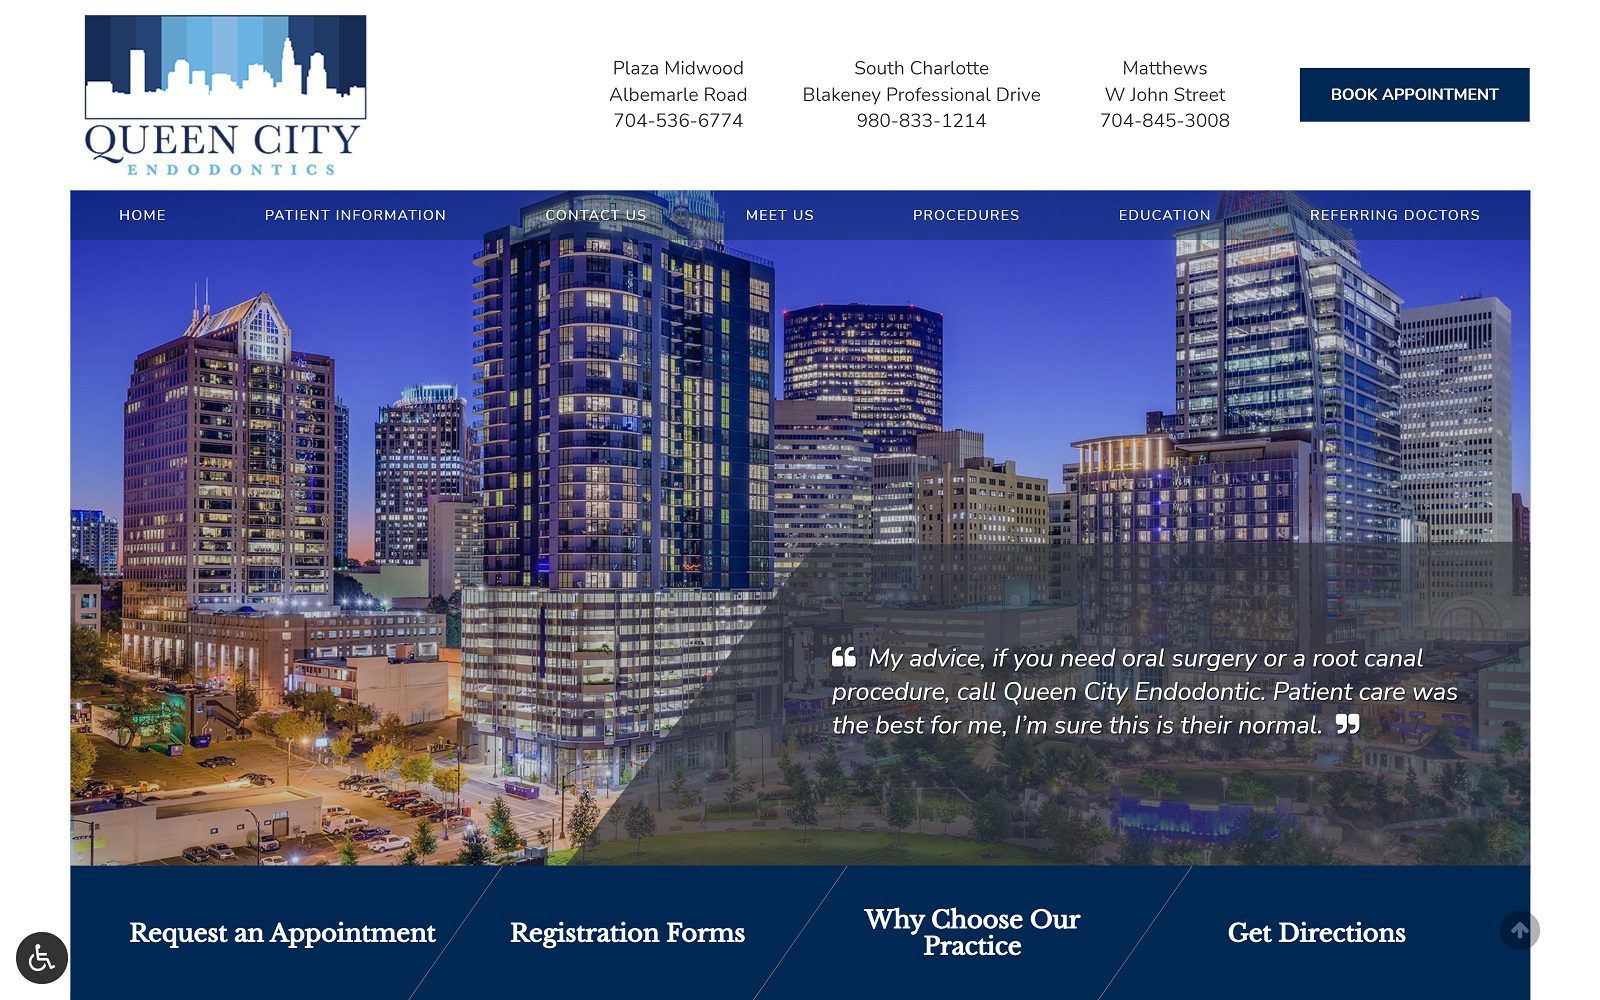 The screenshot of queen city endodontics plaza midwood website